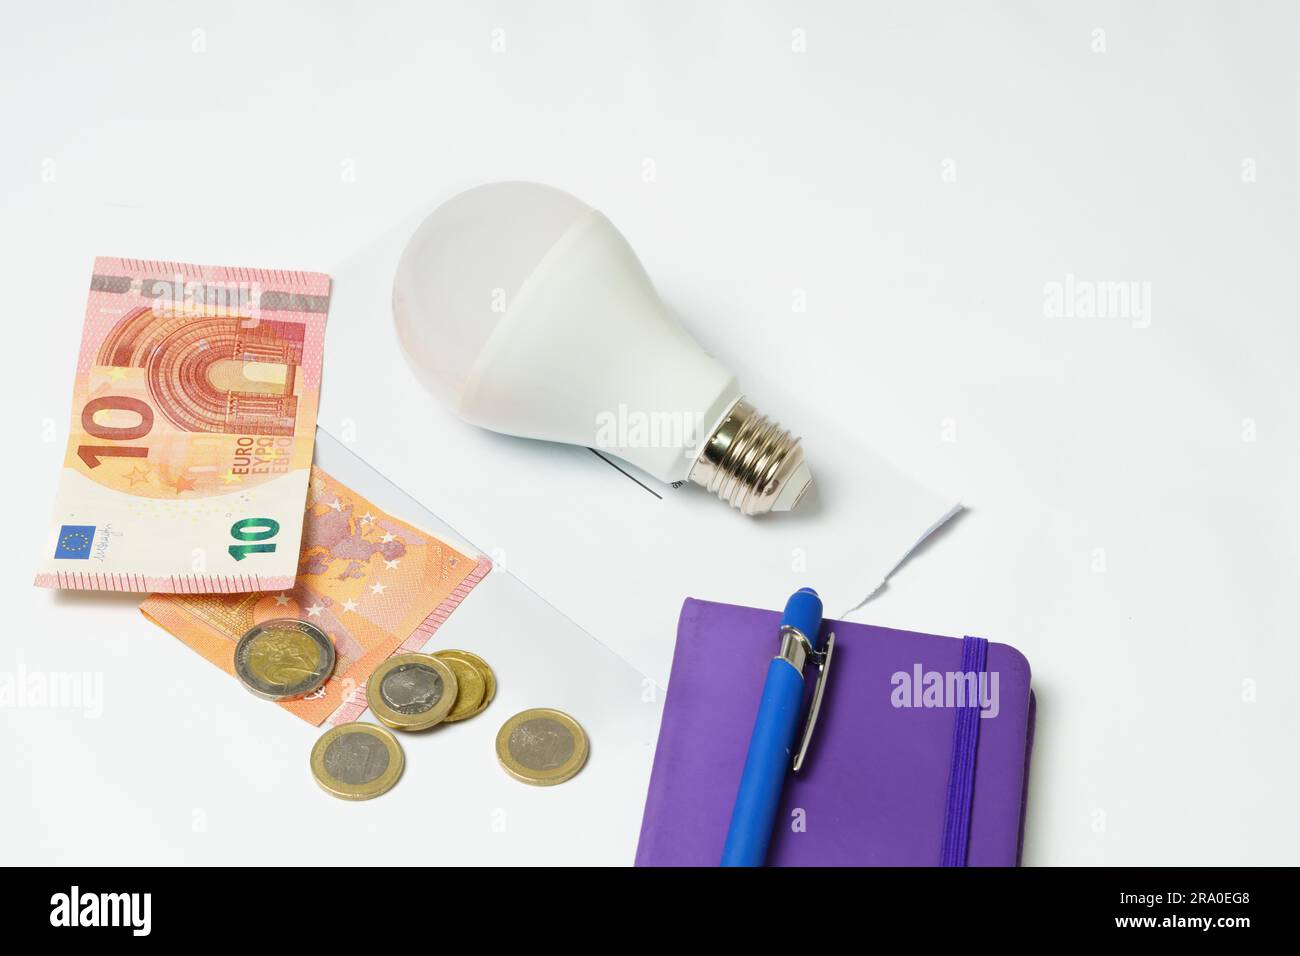 Ampoule sur une facture d'électricité et billets et pièces sur fond blanc. Notion d'augmentation du prix de l'électricité Banque D'Images